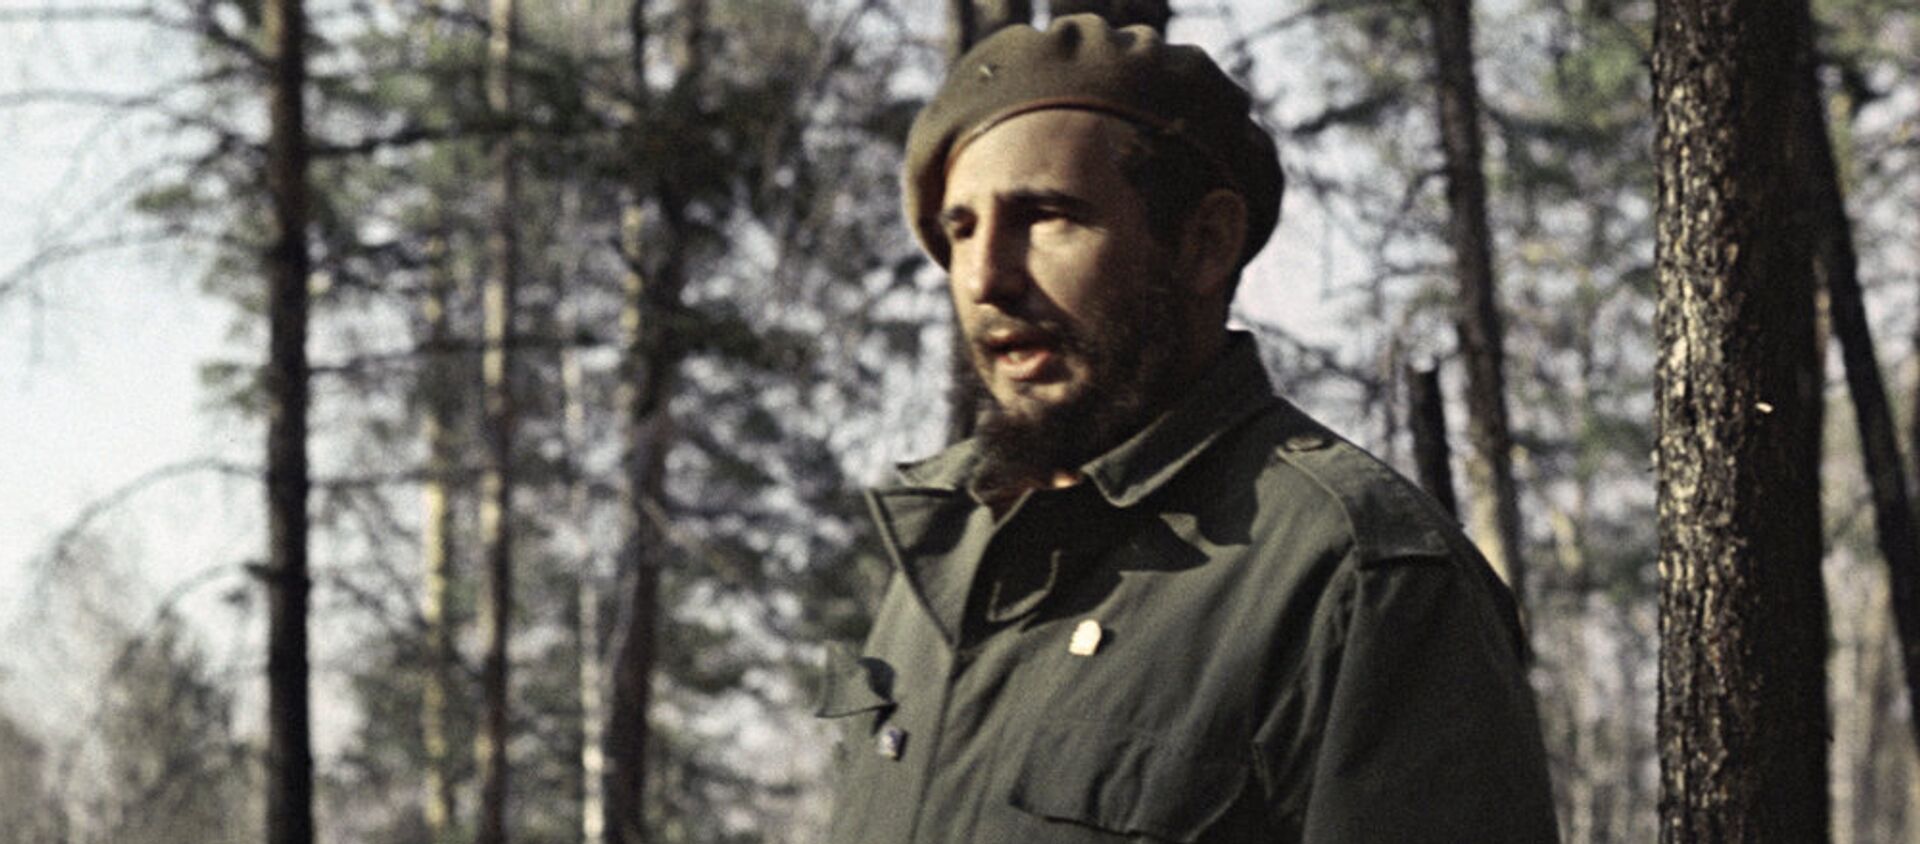 Fidel Castro, líder de la Revolución cubana, en los bosques de Siberia. - Sputnik Mundo, 1920, 26.11.2016